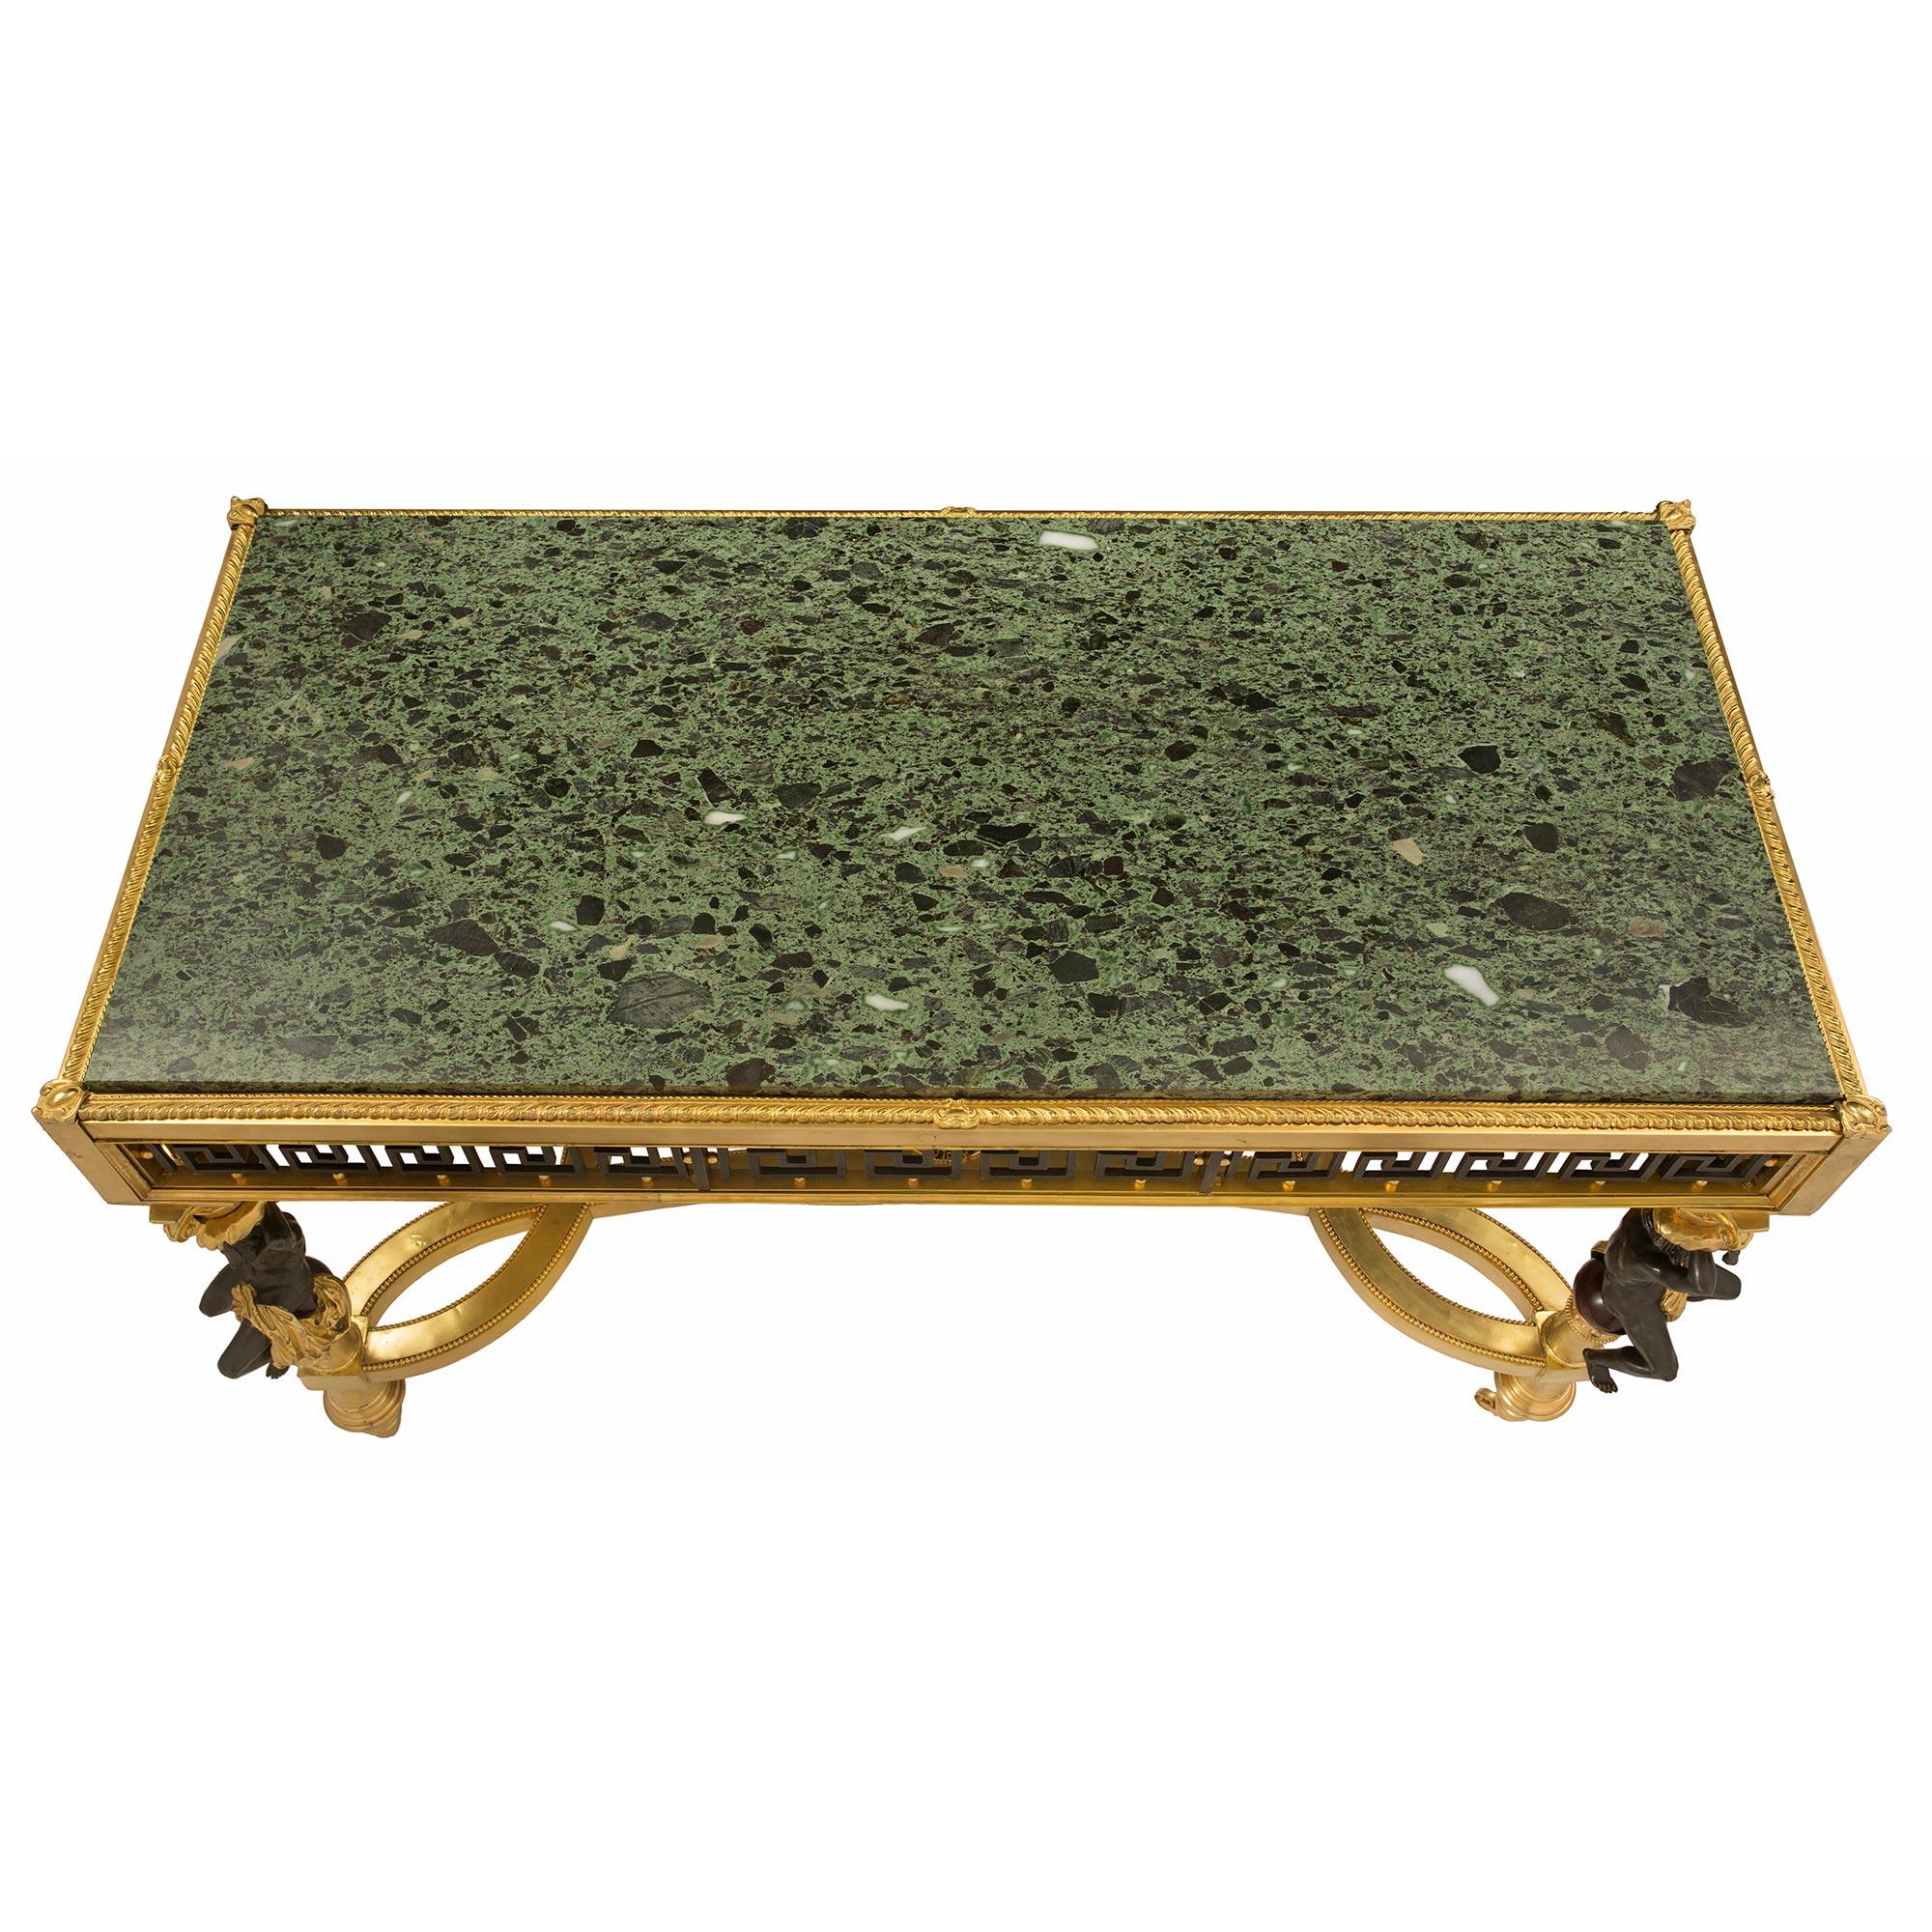 Sensationnelle table de centre en bronze doré, bronze patiné et marbre Vert Antique de style Louis XVI du 19ème siècle. La table est surélevée par ses roulettes d'origine sous d'élégants pieds cannelés en spirale. Chaque pied présente